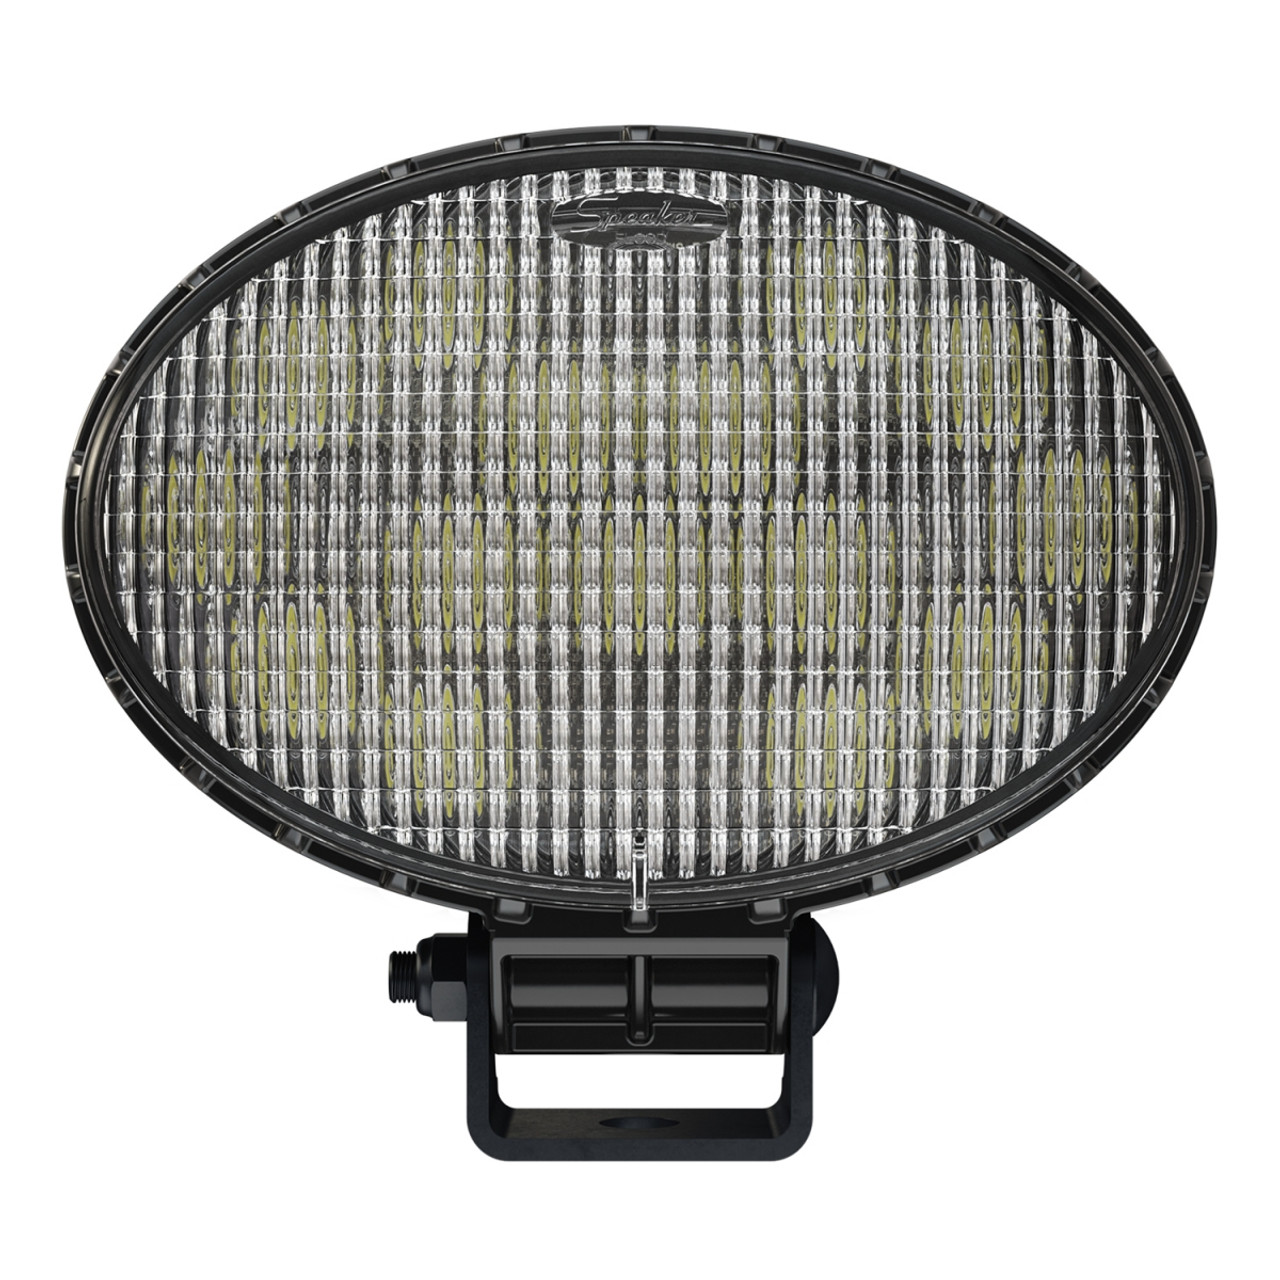 J.W. Speaker 12-24V LED Work Light - Model 7150